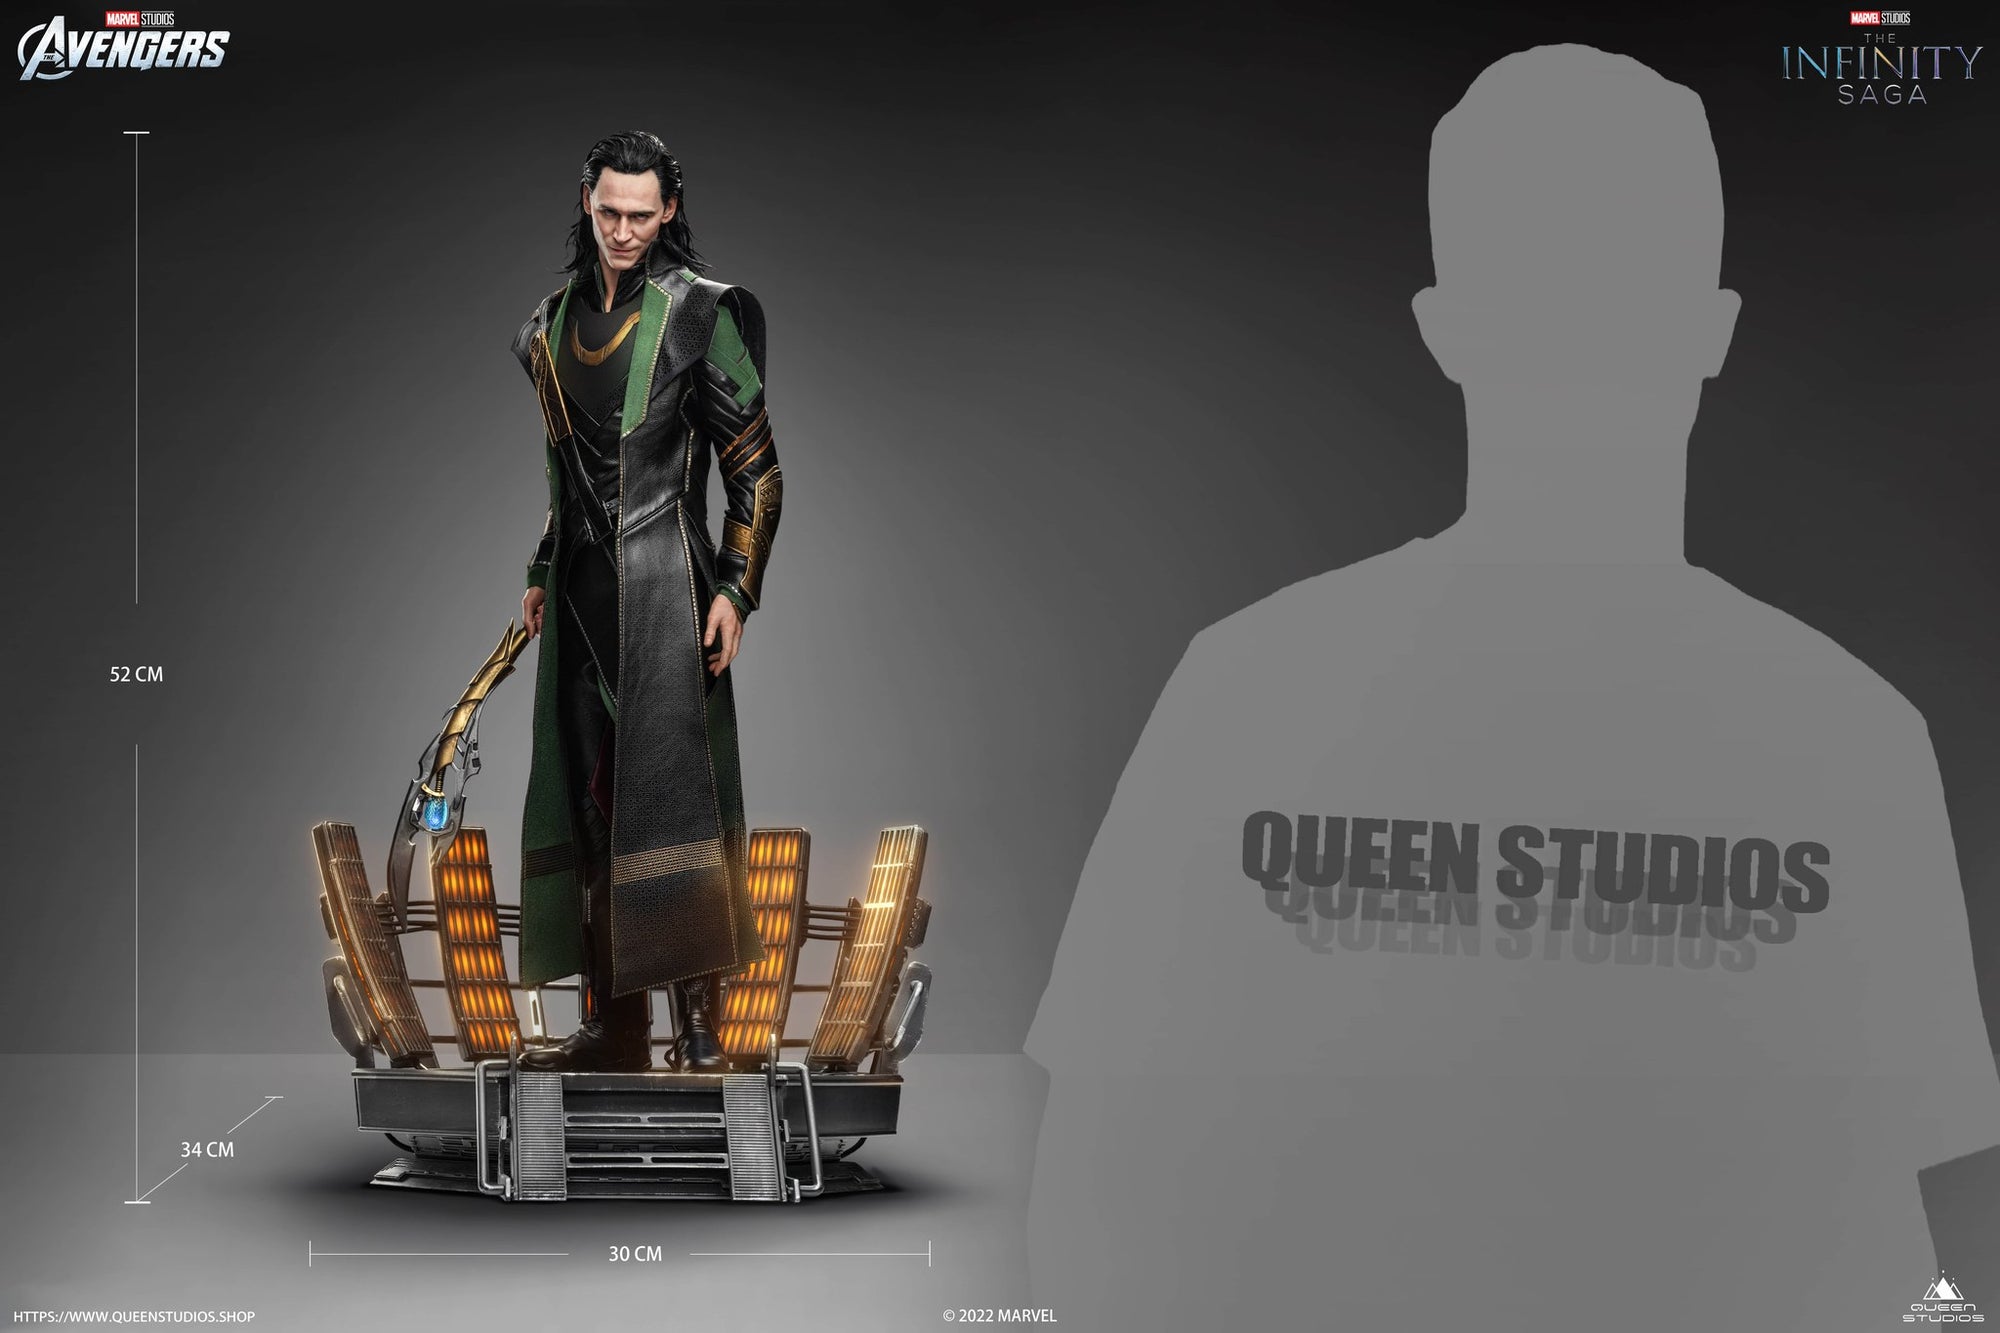 Loki 1/4 Scale Statue - Spec Fiction Shop